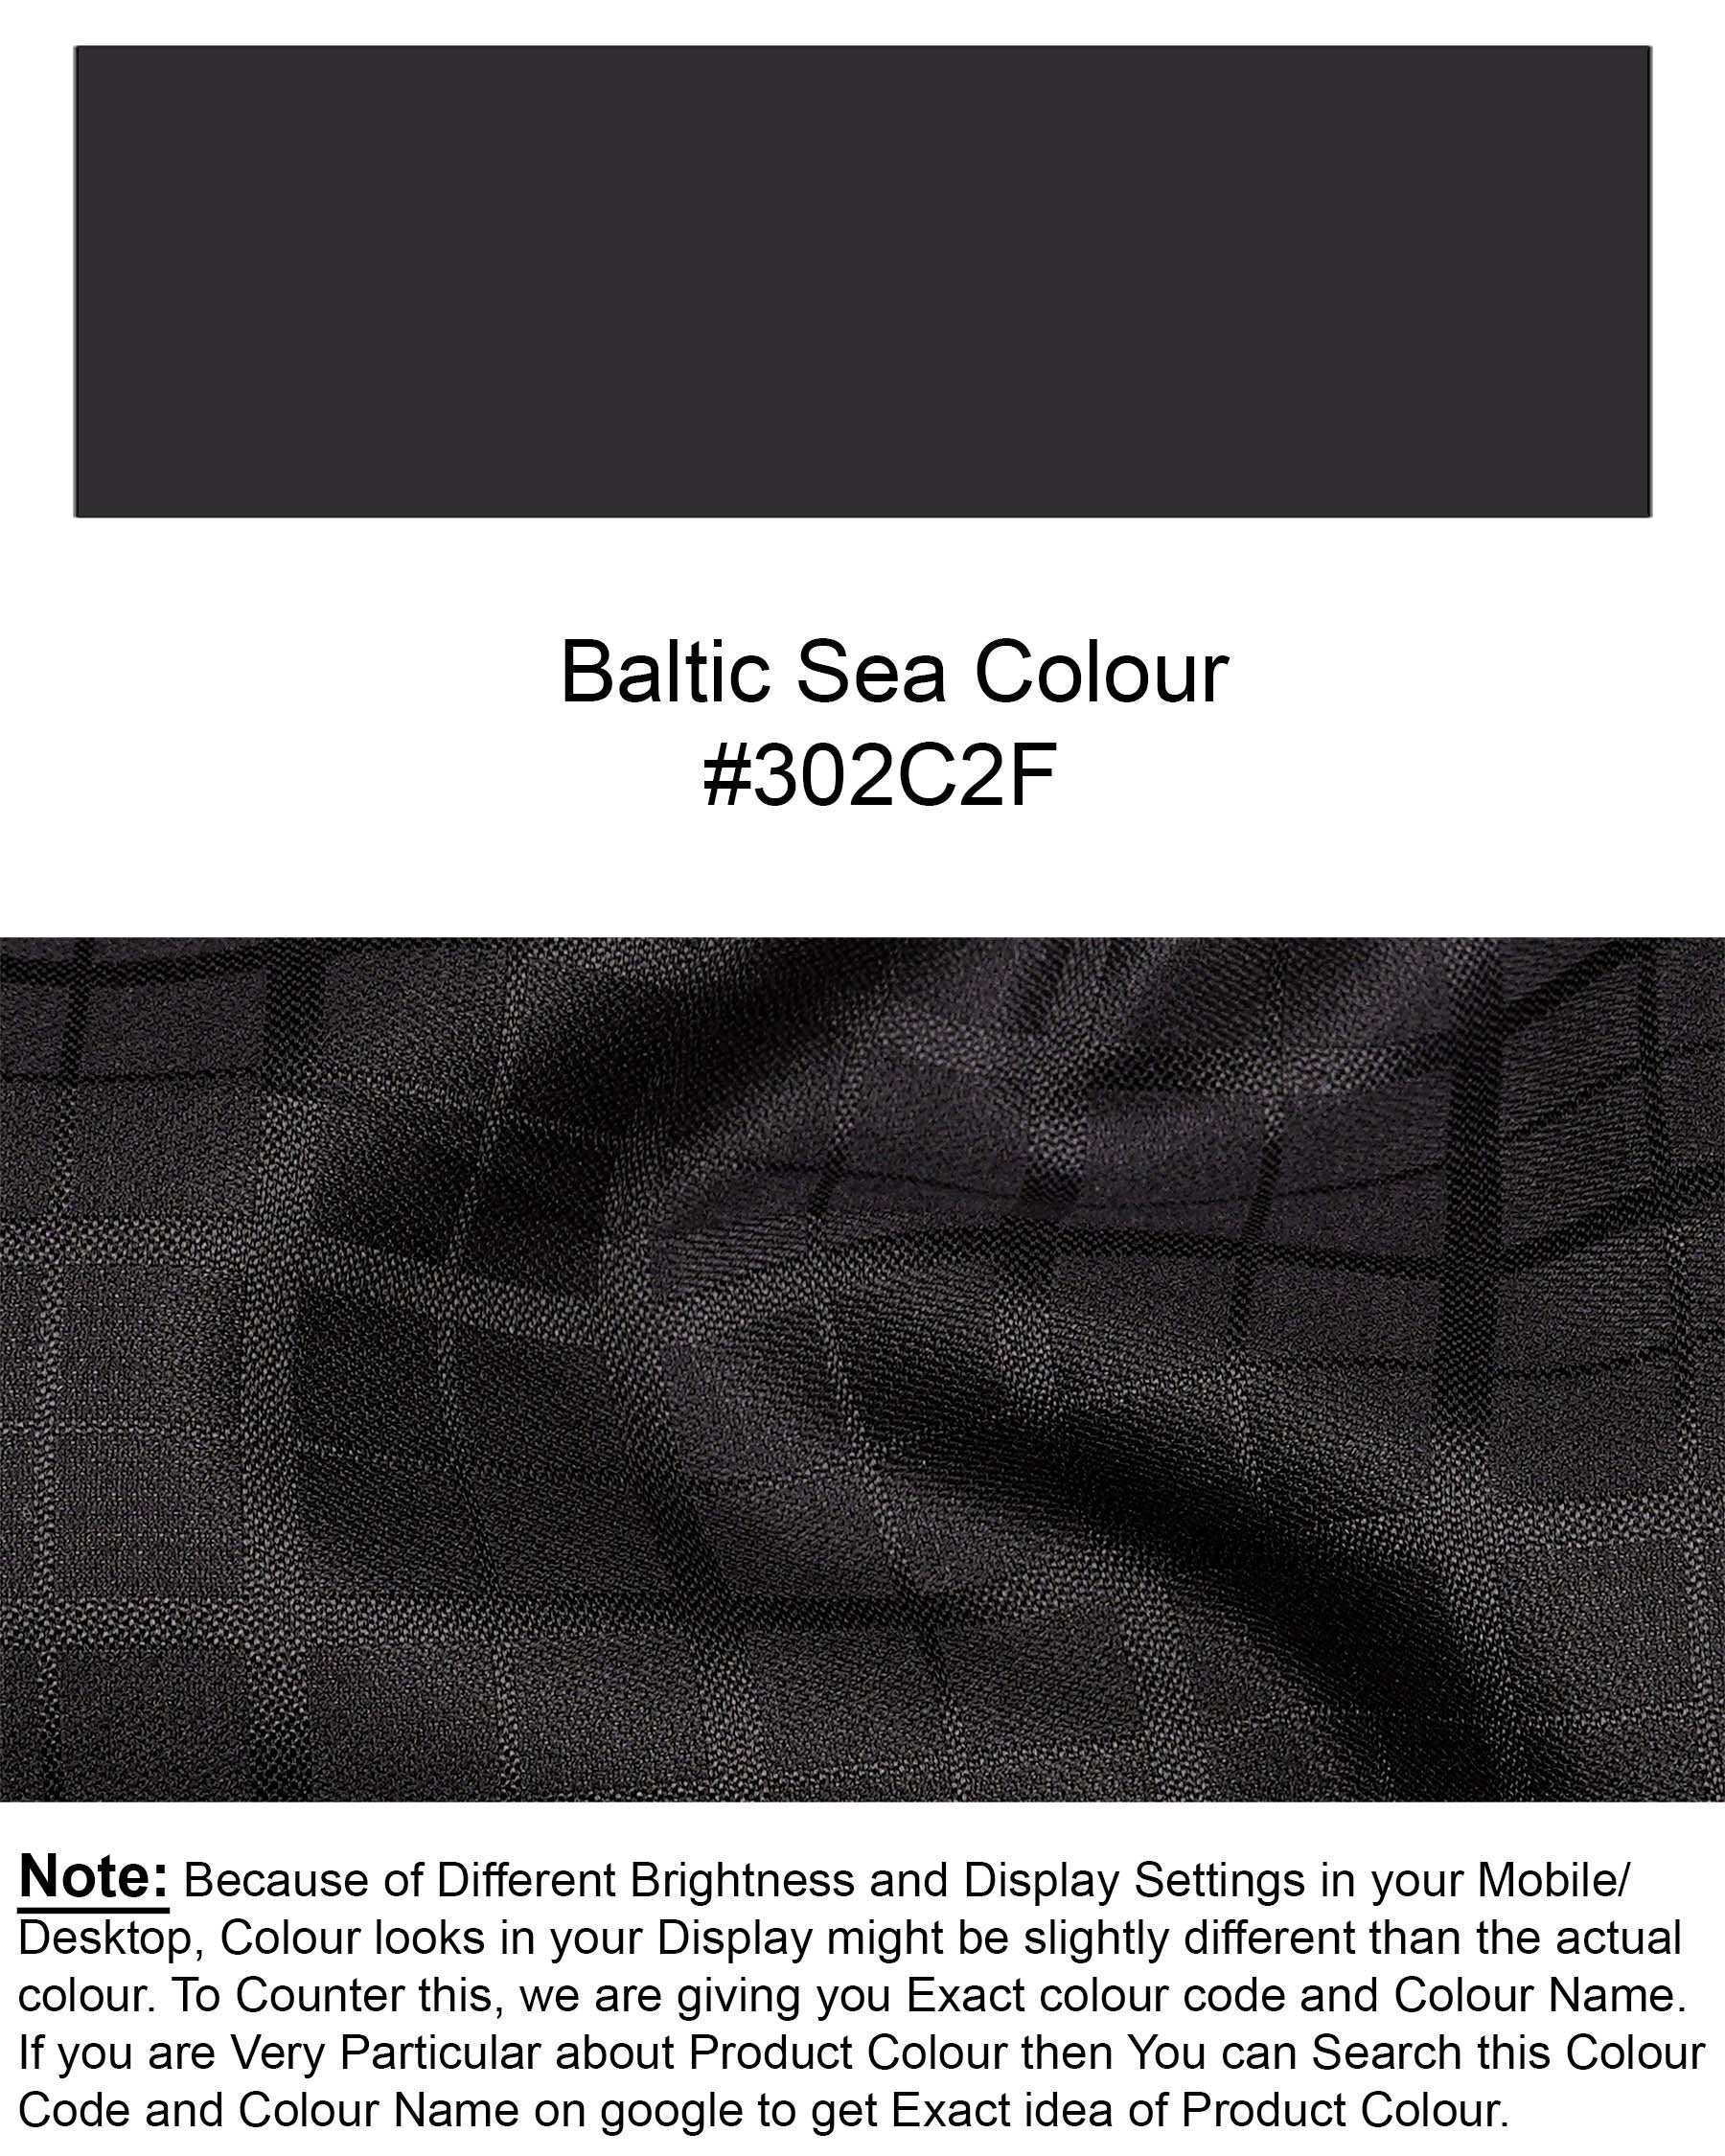 Baltic Sea Black Subtle Plaid Cross Buttoned Bandhgala Blazer    BL1953-CBG-36, BL1953-CBG-38, BL1953-CBG-40, BL1953-CBG-42, BL1953-CBG-44, BL1953-CBG-46, BL1953-CBG-48, BL1953-CBG-50, BL1953-CBG-52, BL1953-CBG-54, BL1953-CBG-56, BL1953-CBG-58, BL1953-CBG-60